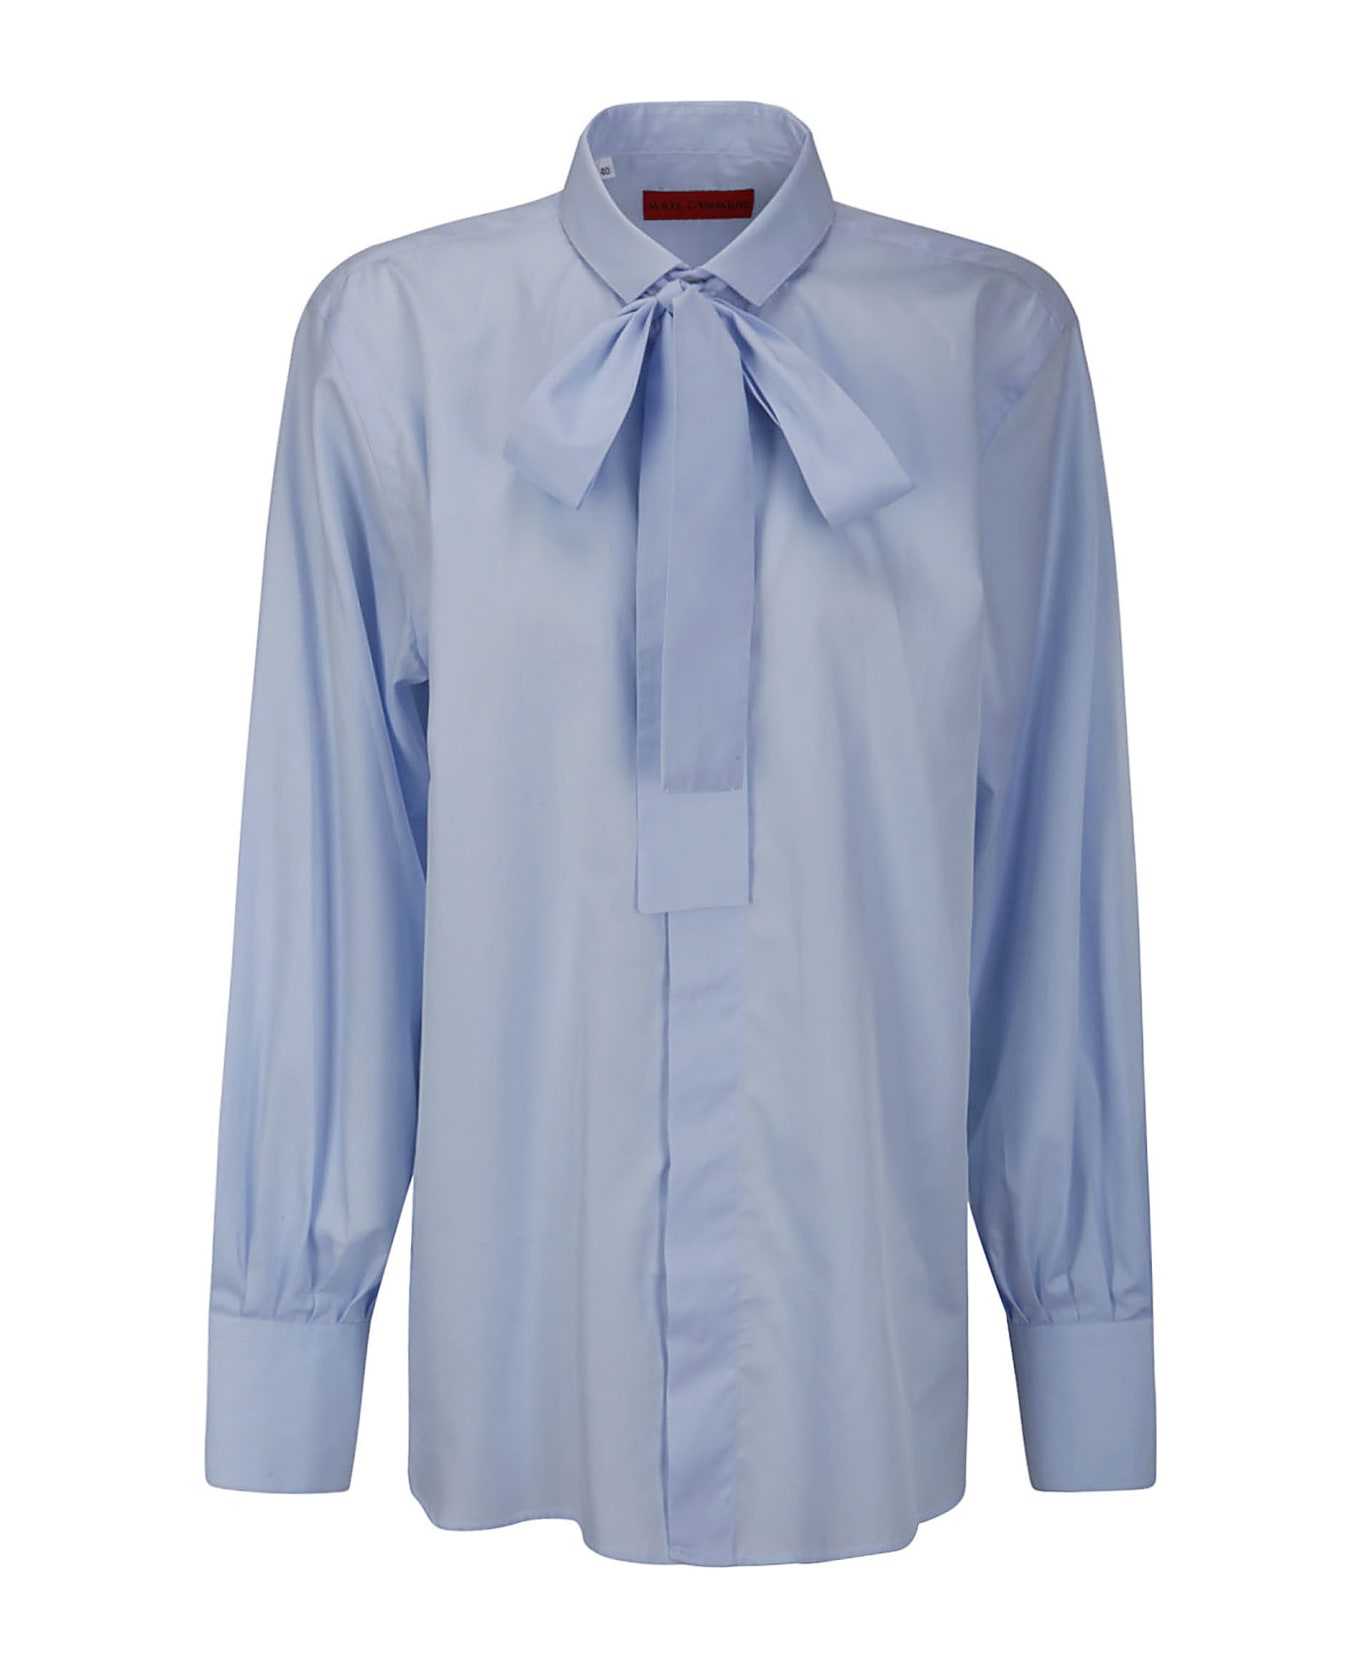 Wild Cashmere Shirt With Hidden Buttons - LIGHT BLUE